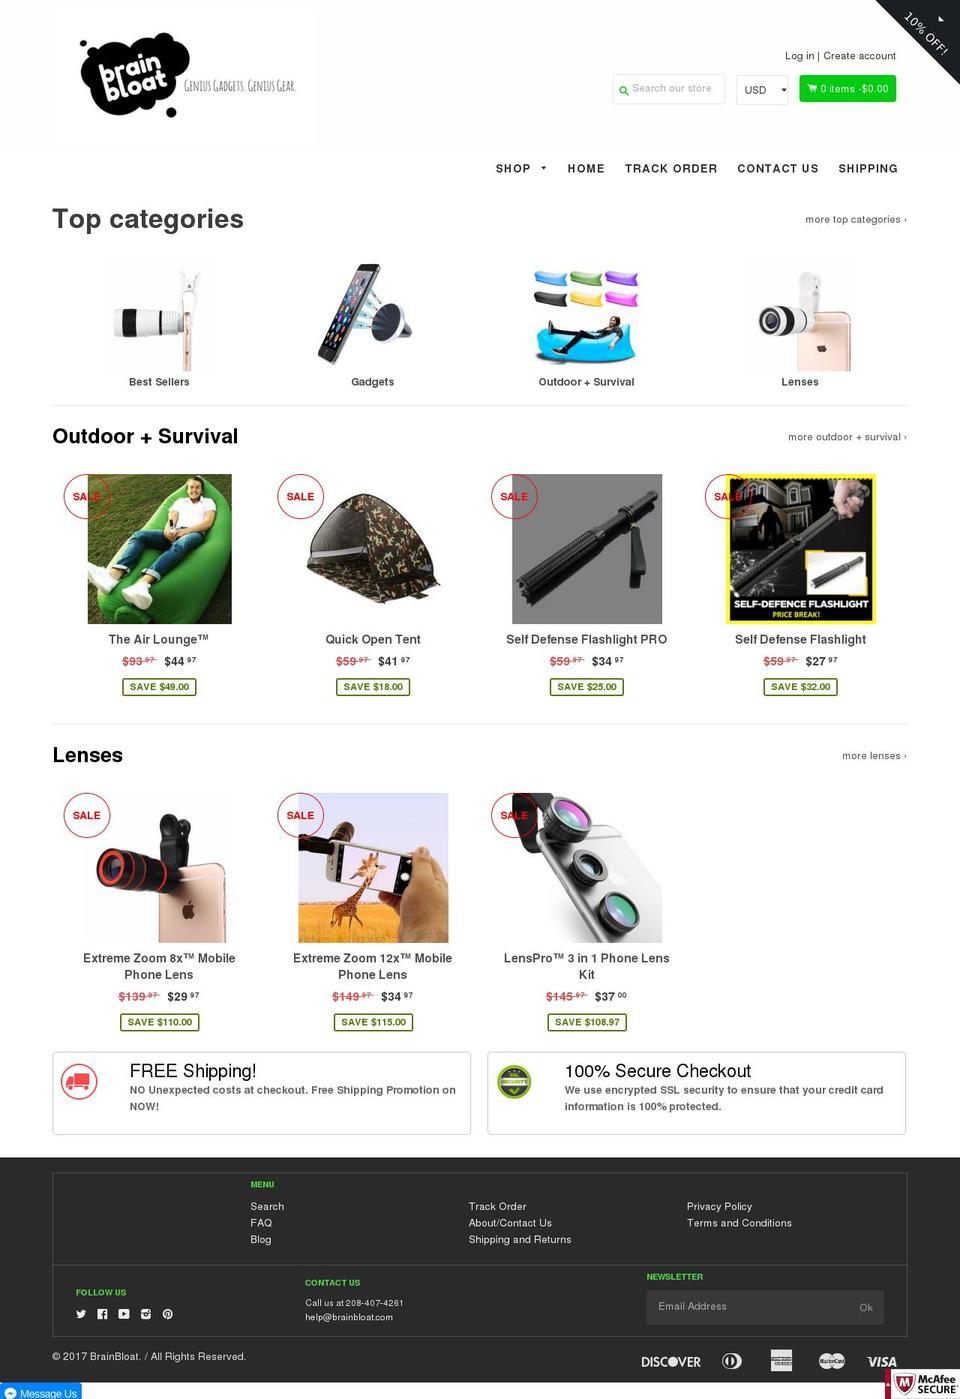 Shoptimized Shopify theme site example brainbloat.com